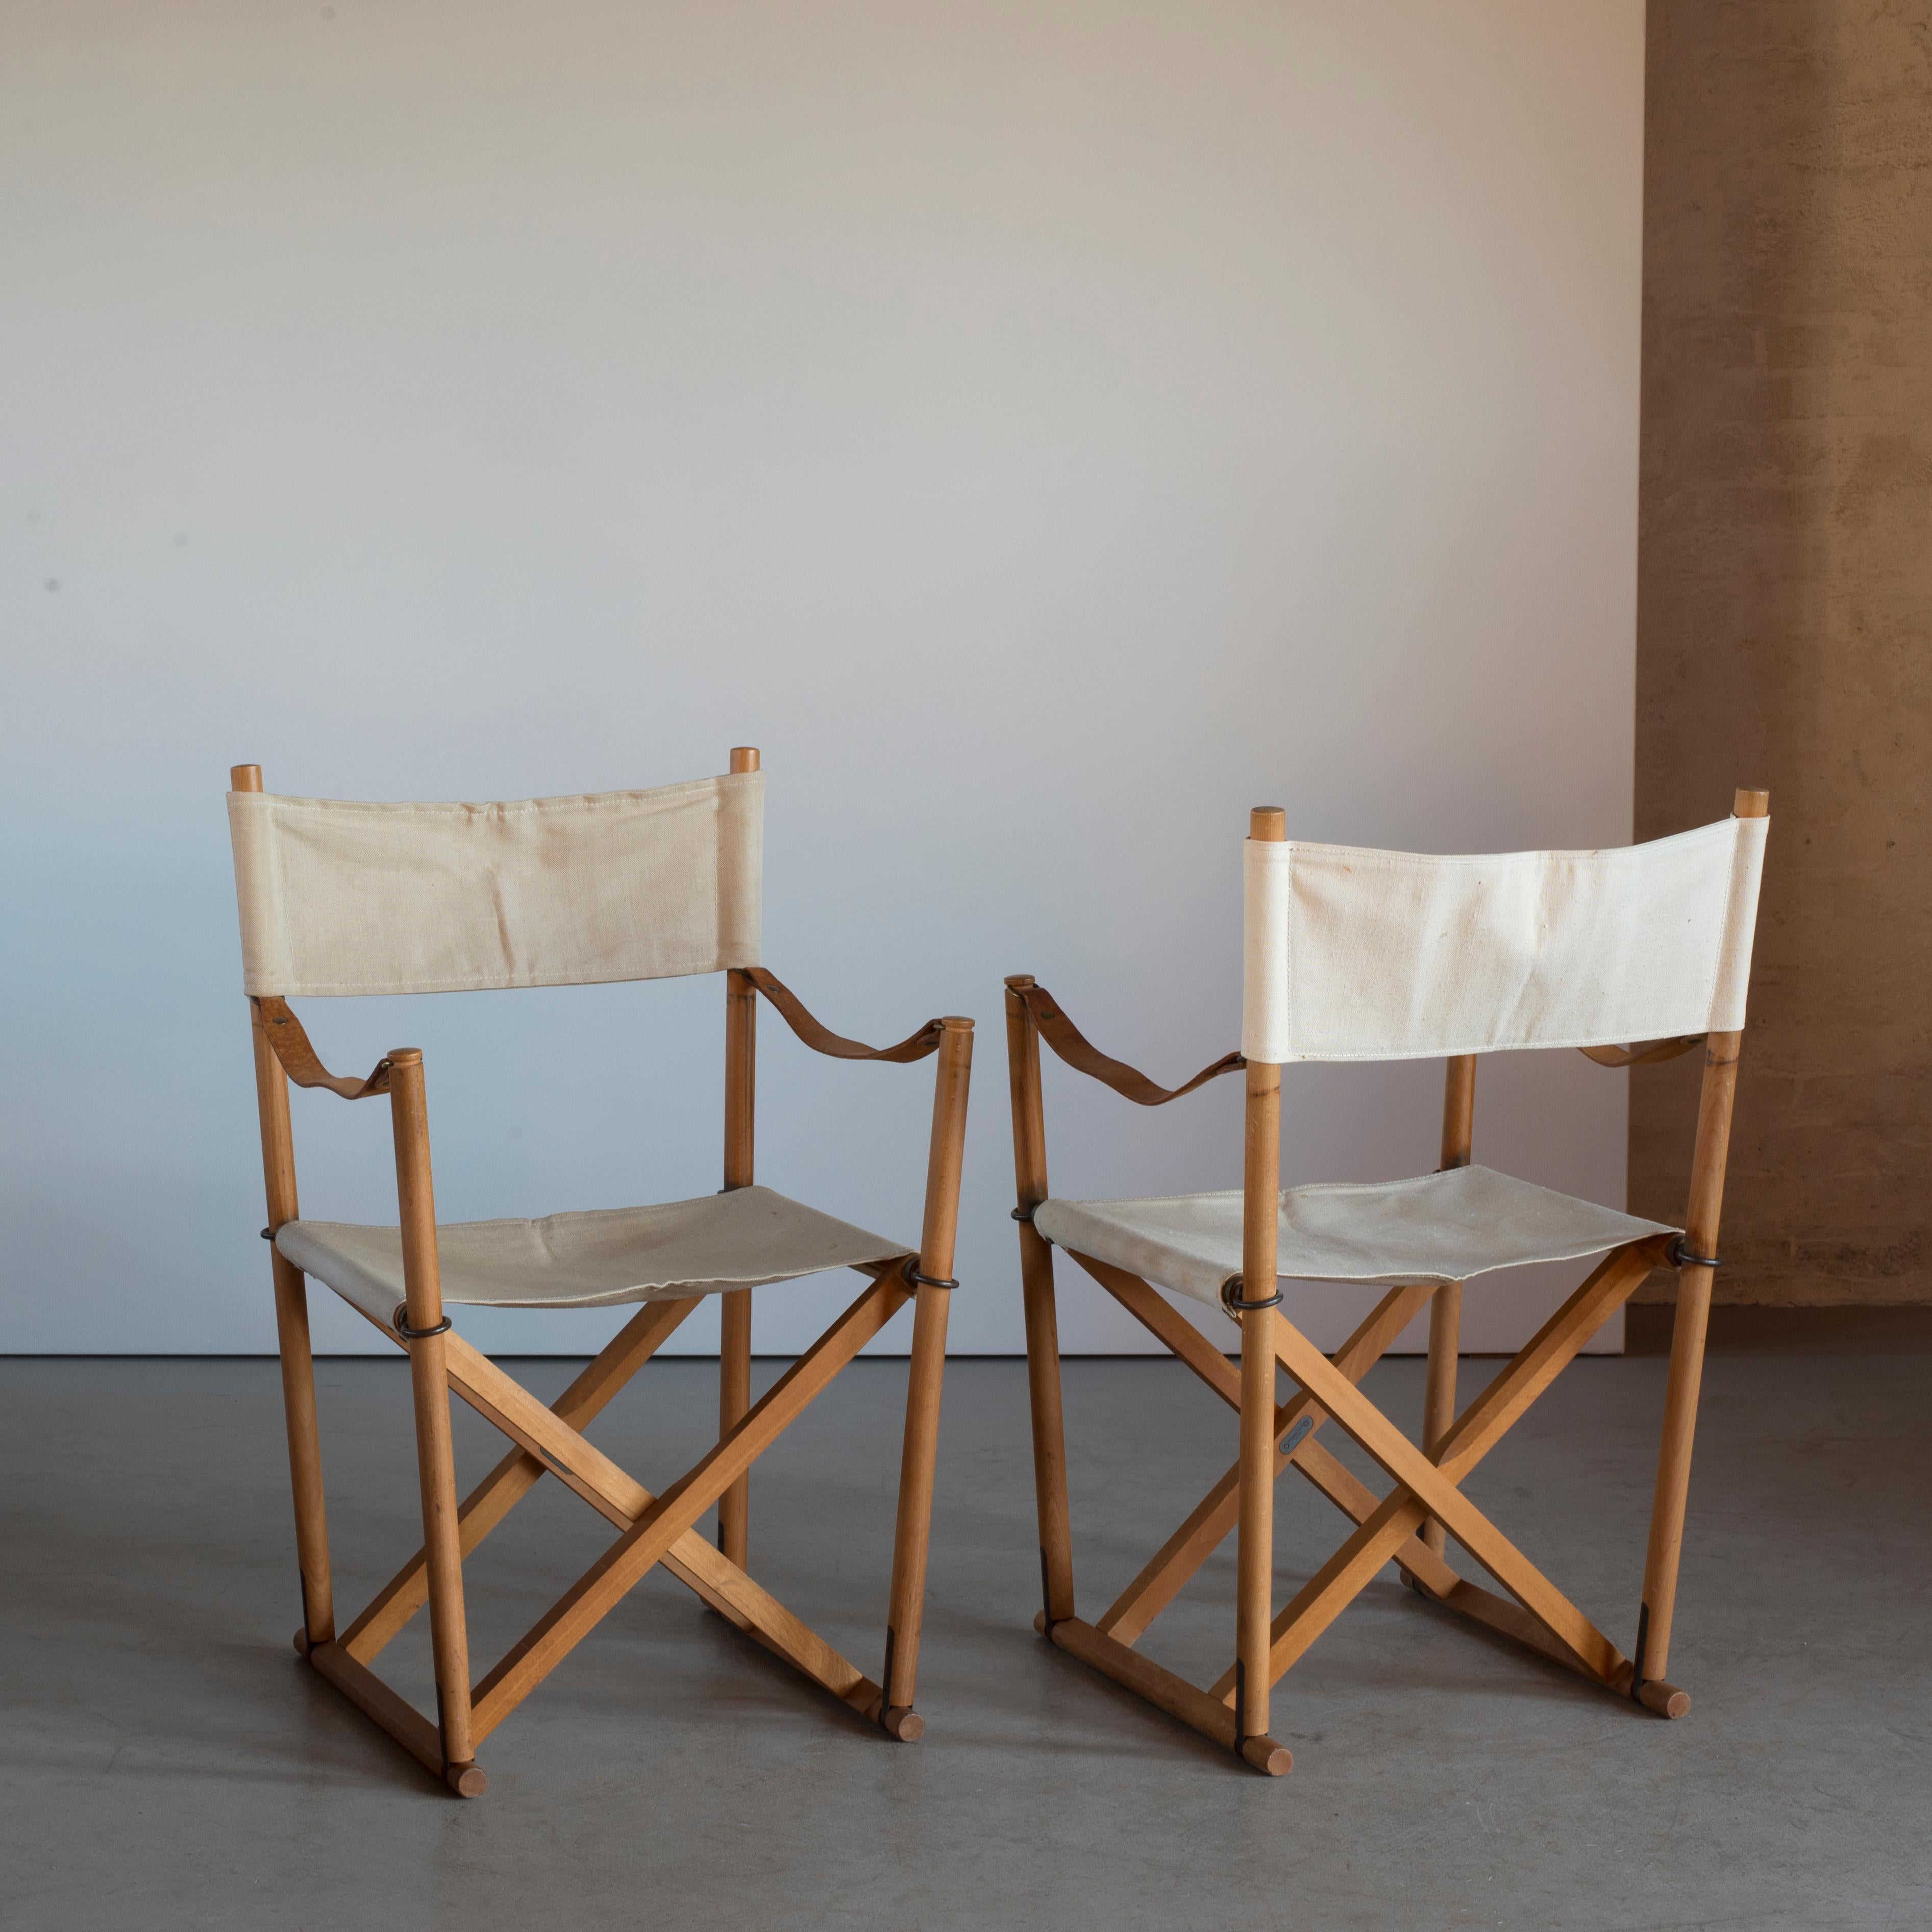 Paire de chaises pliantes en hêtre et toile de Foldes. Réalisé par Interna, Danemark.